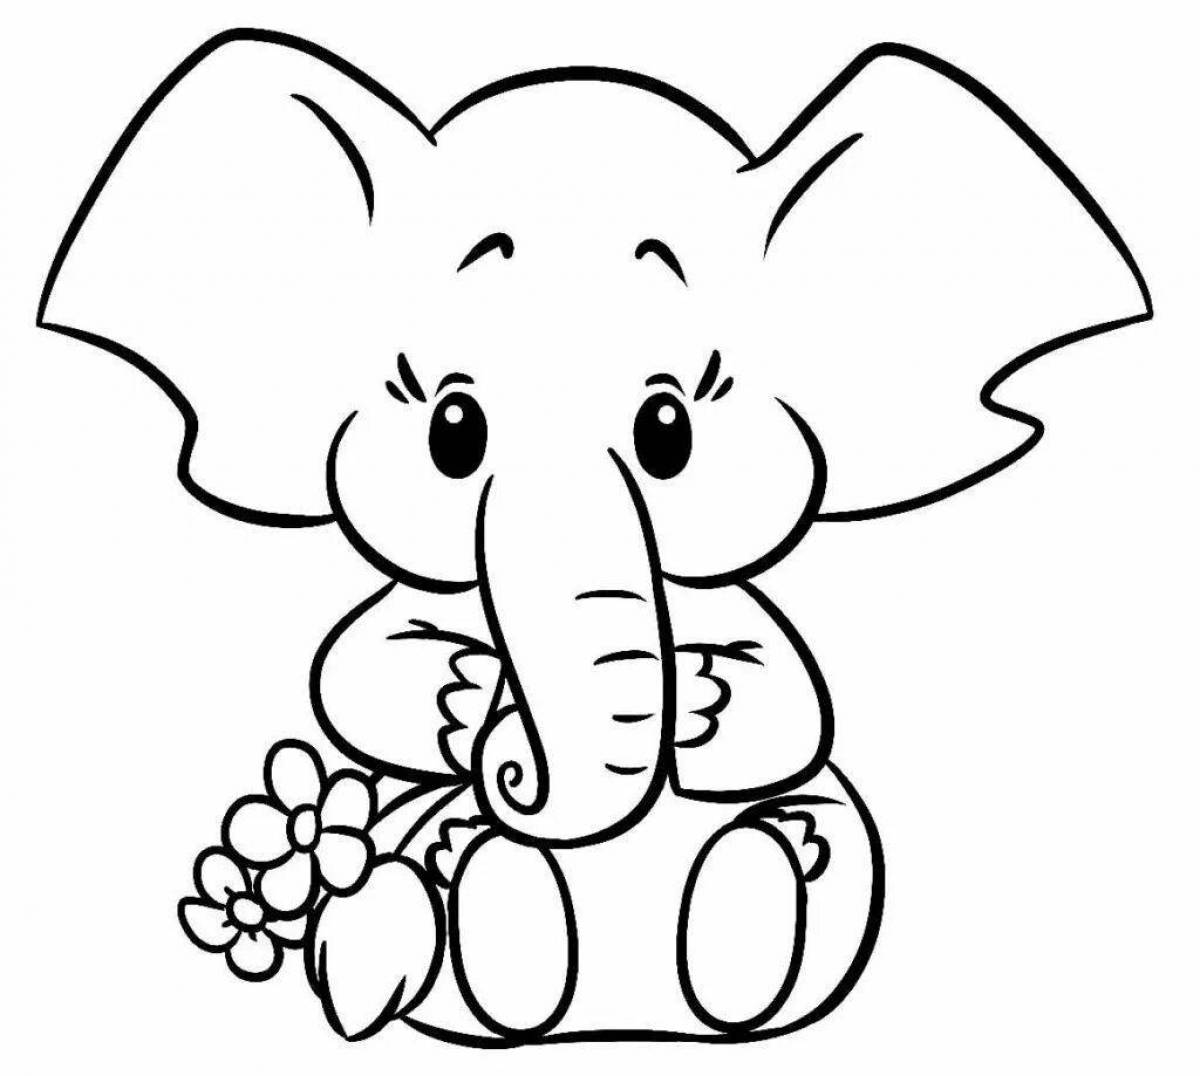 Игривая страница раскраски слона для детей